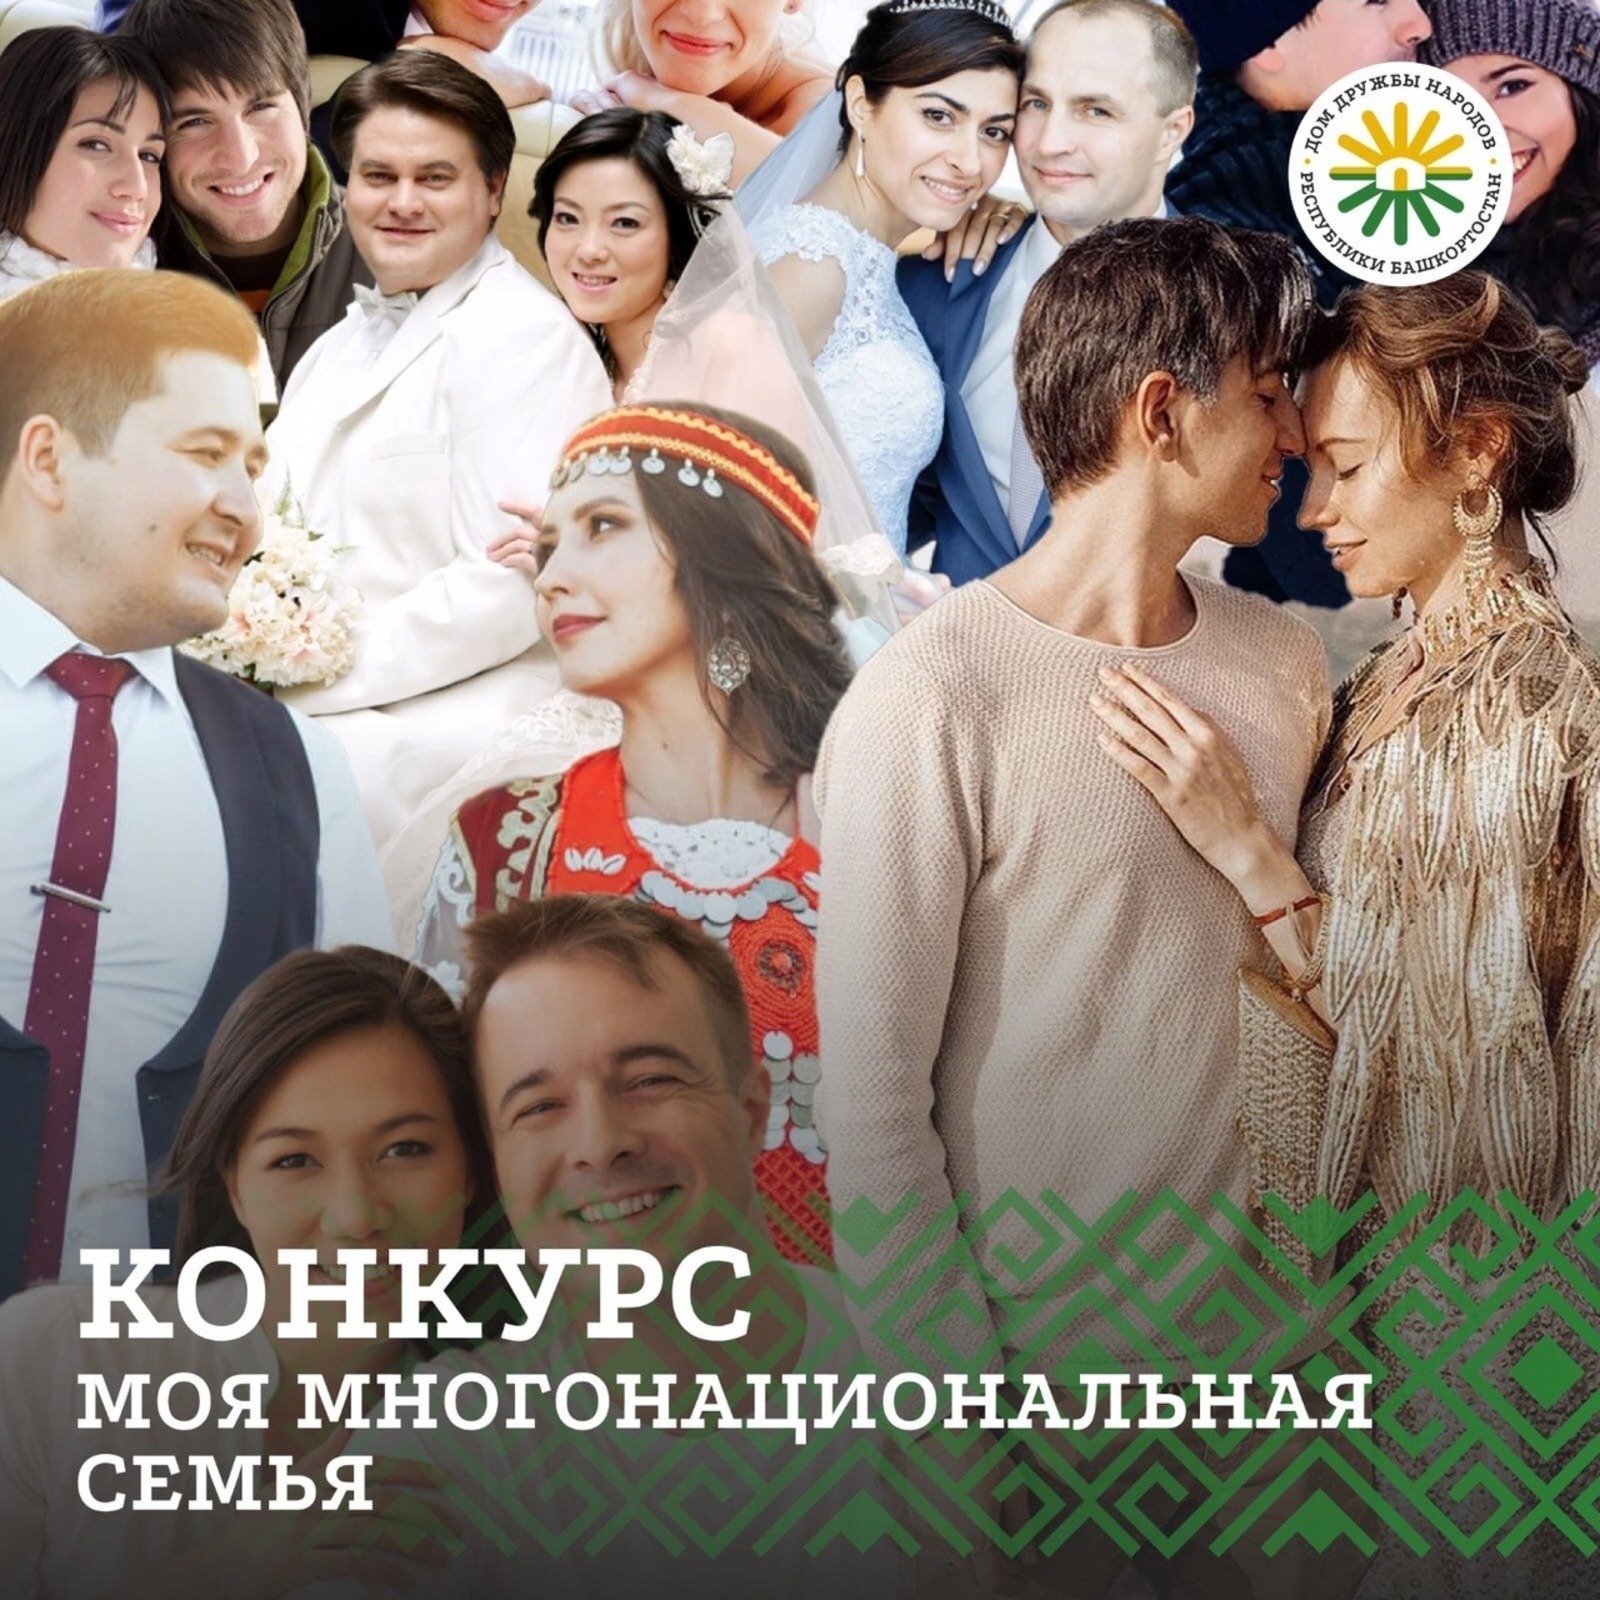 В Башкирии запустили онлайн-конкурс «Моя многонациональная семья»